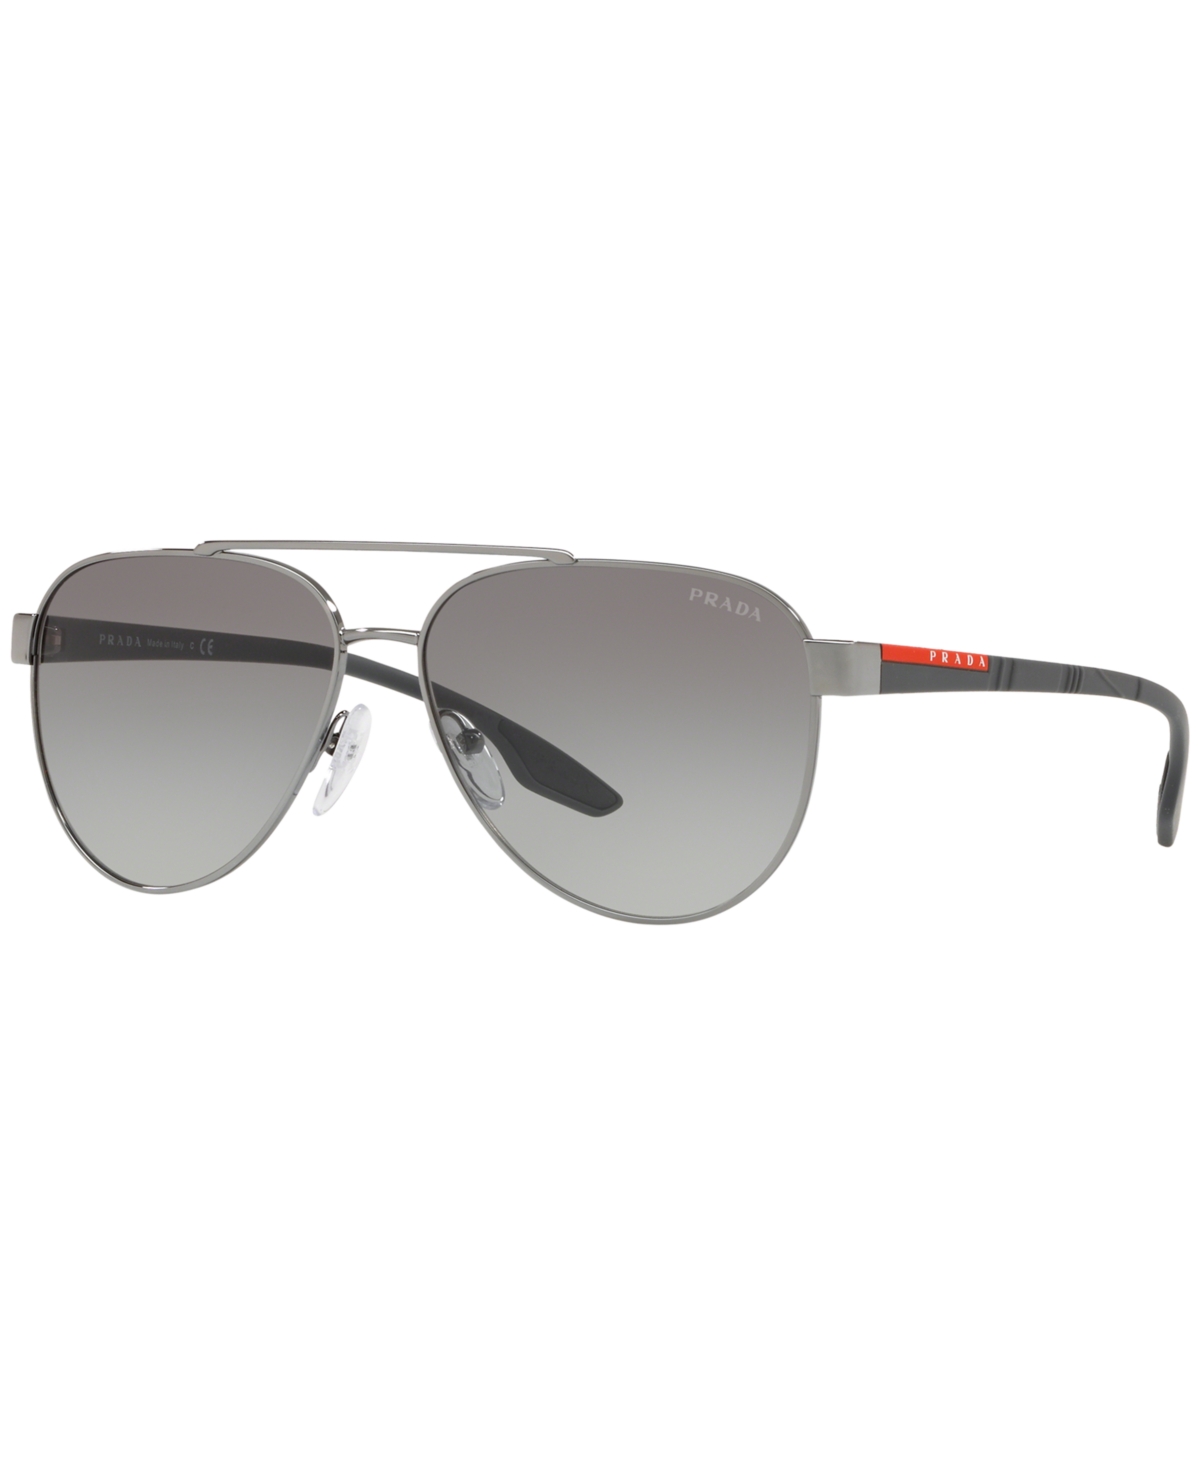 Prada Men's Sunglasses, Ps 54ts 58 In Gunmetal,grey Gradient